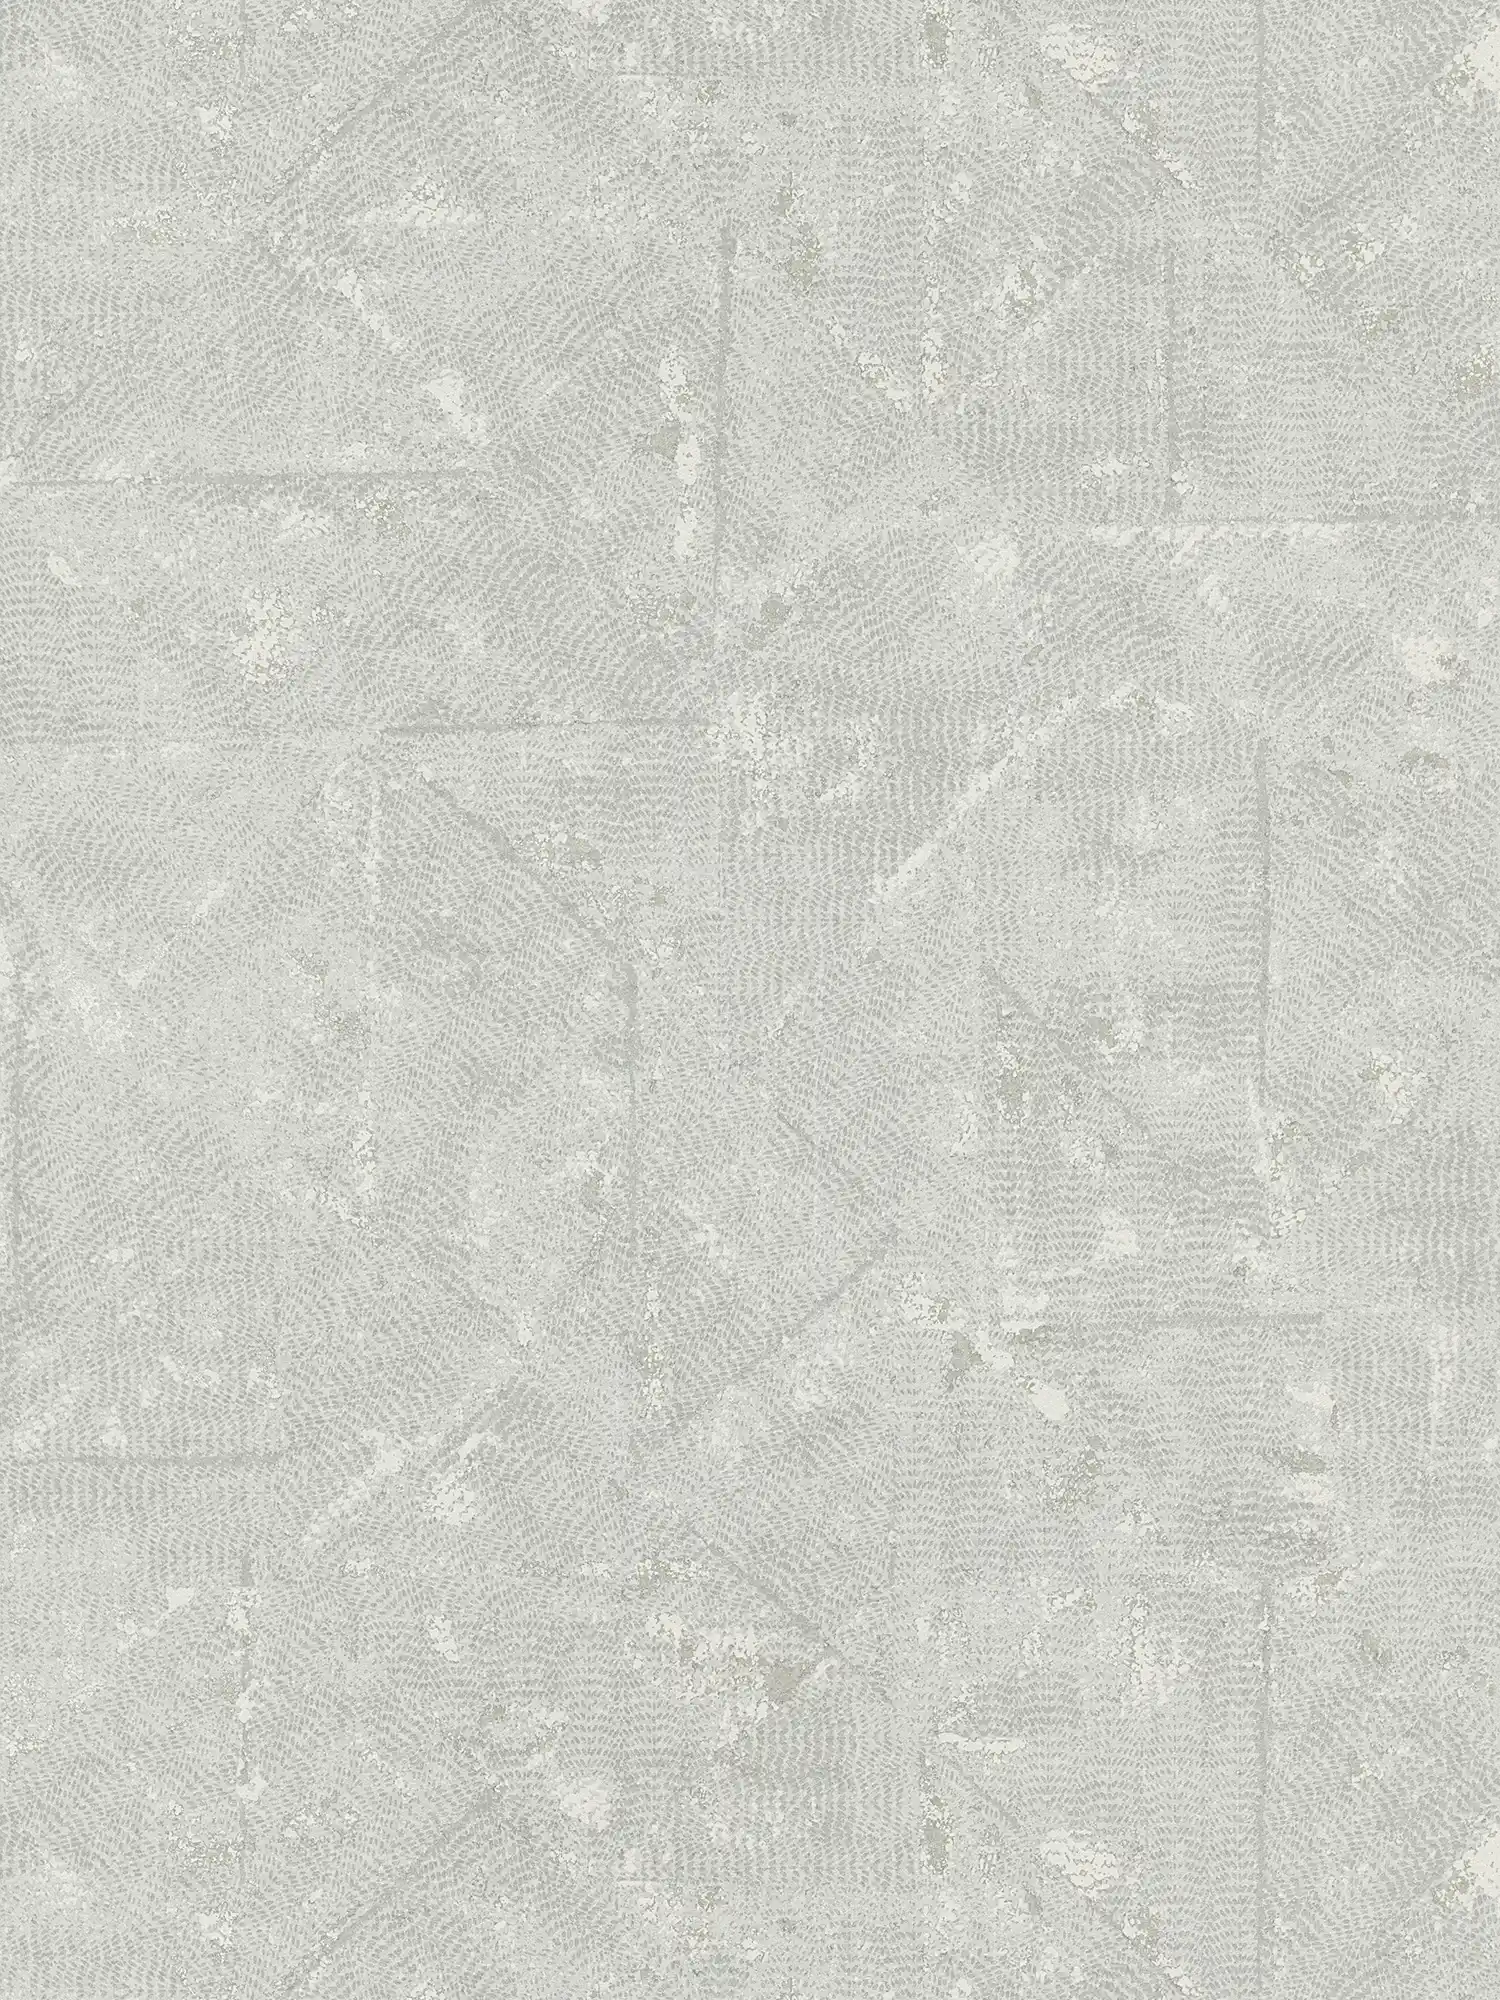         Hellgraue Uni Tapete mit asymmetrischen Details – Grau, Silber
    